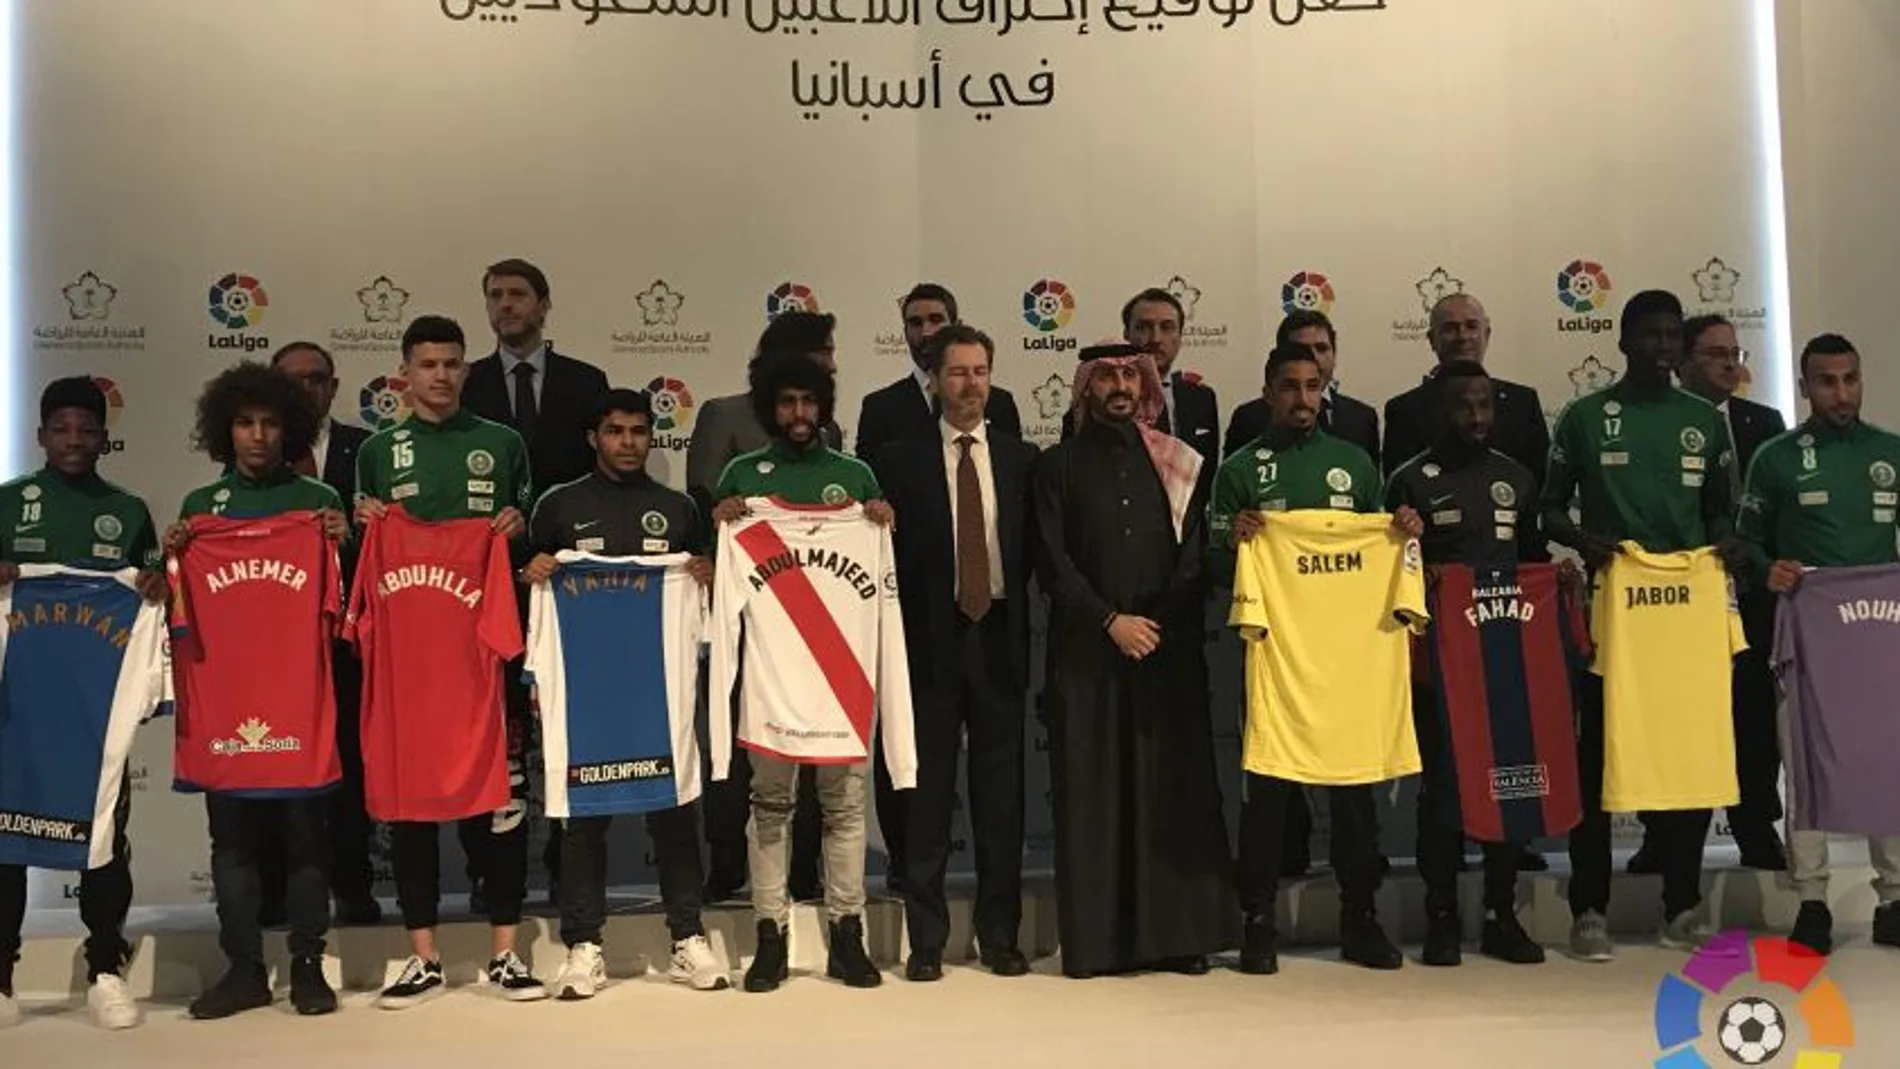 Ayer se celebró en Riad una ceremonia en la que siete clubes de LaLiga Santander y de LaLiga 1│2│3 anunciaron los nueve futbolistas saudíes.